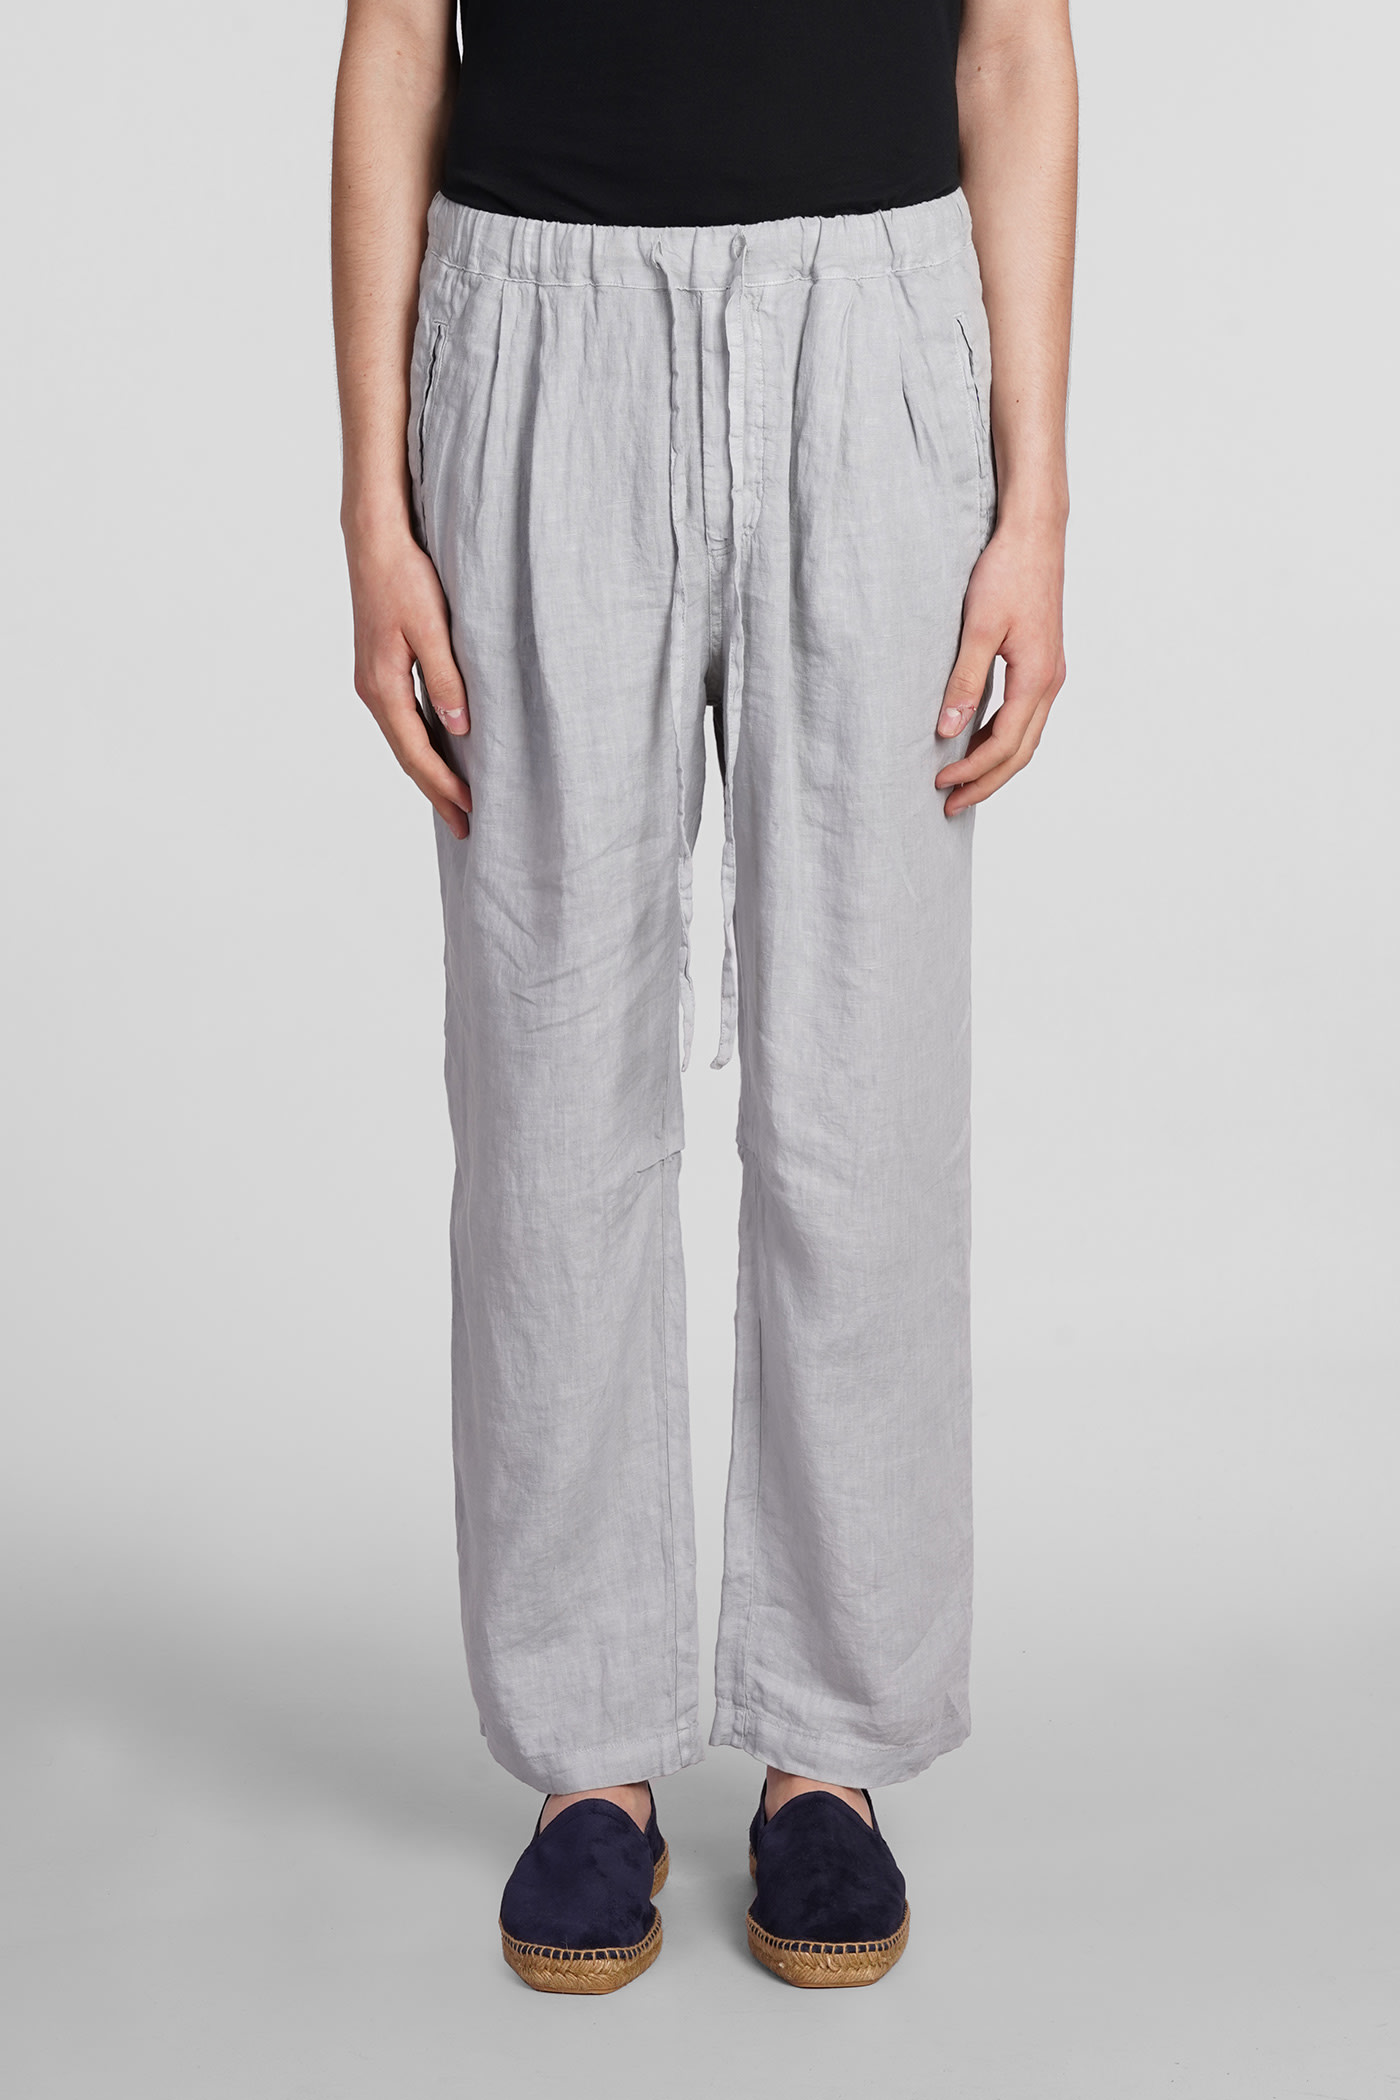 Keywest Pants In Grey Linen